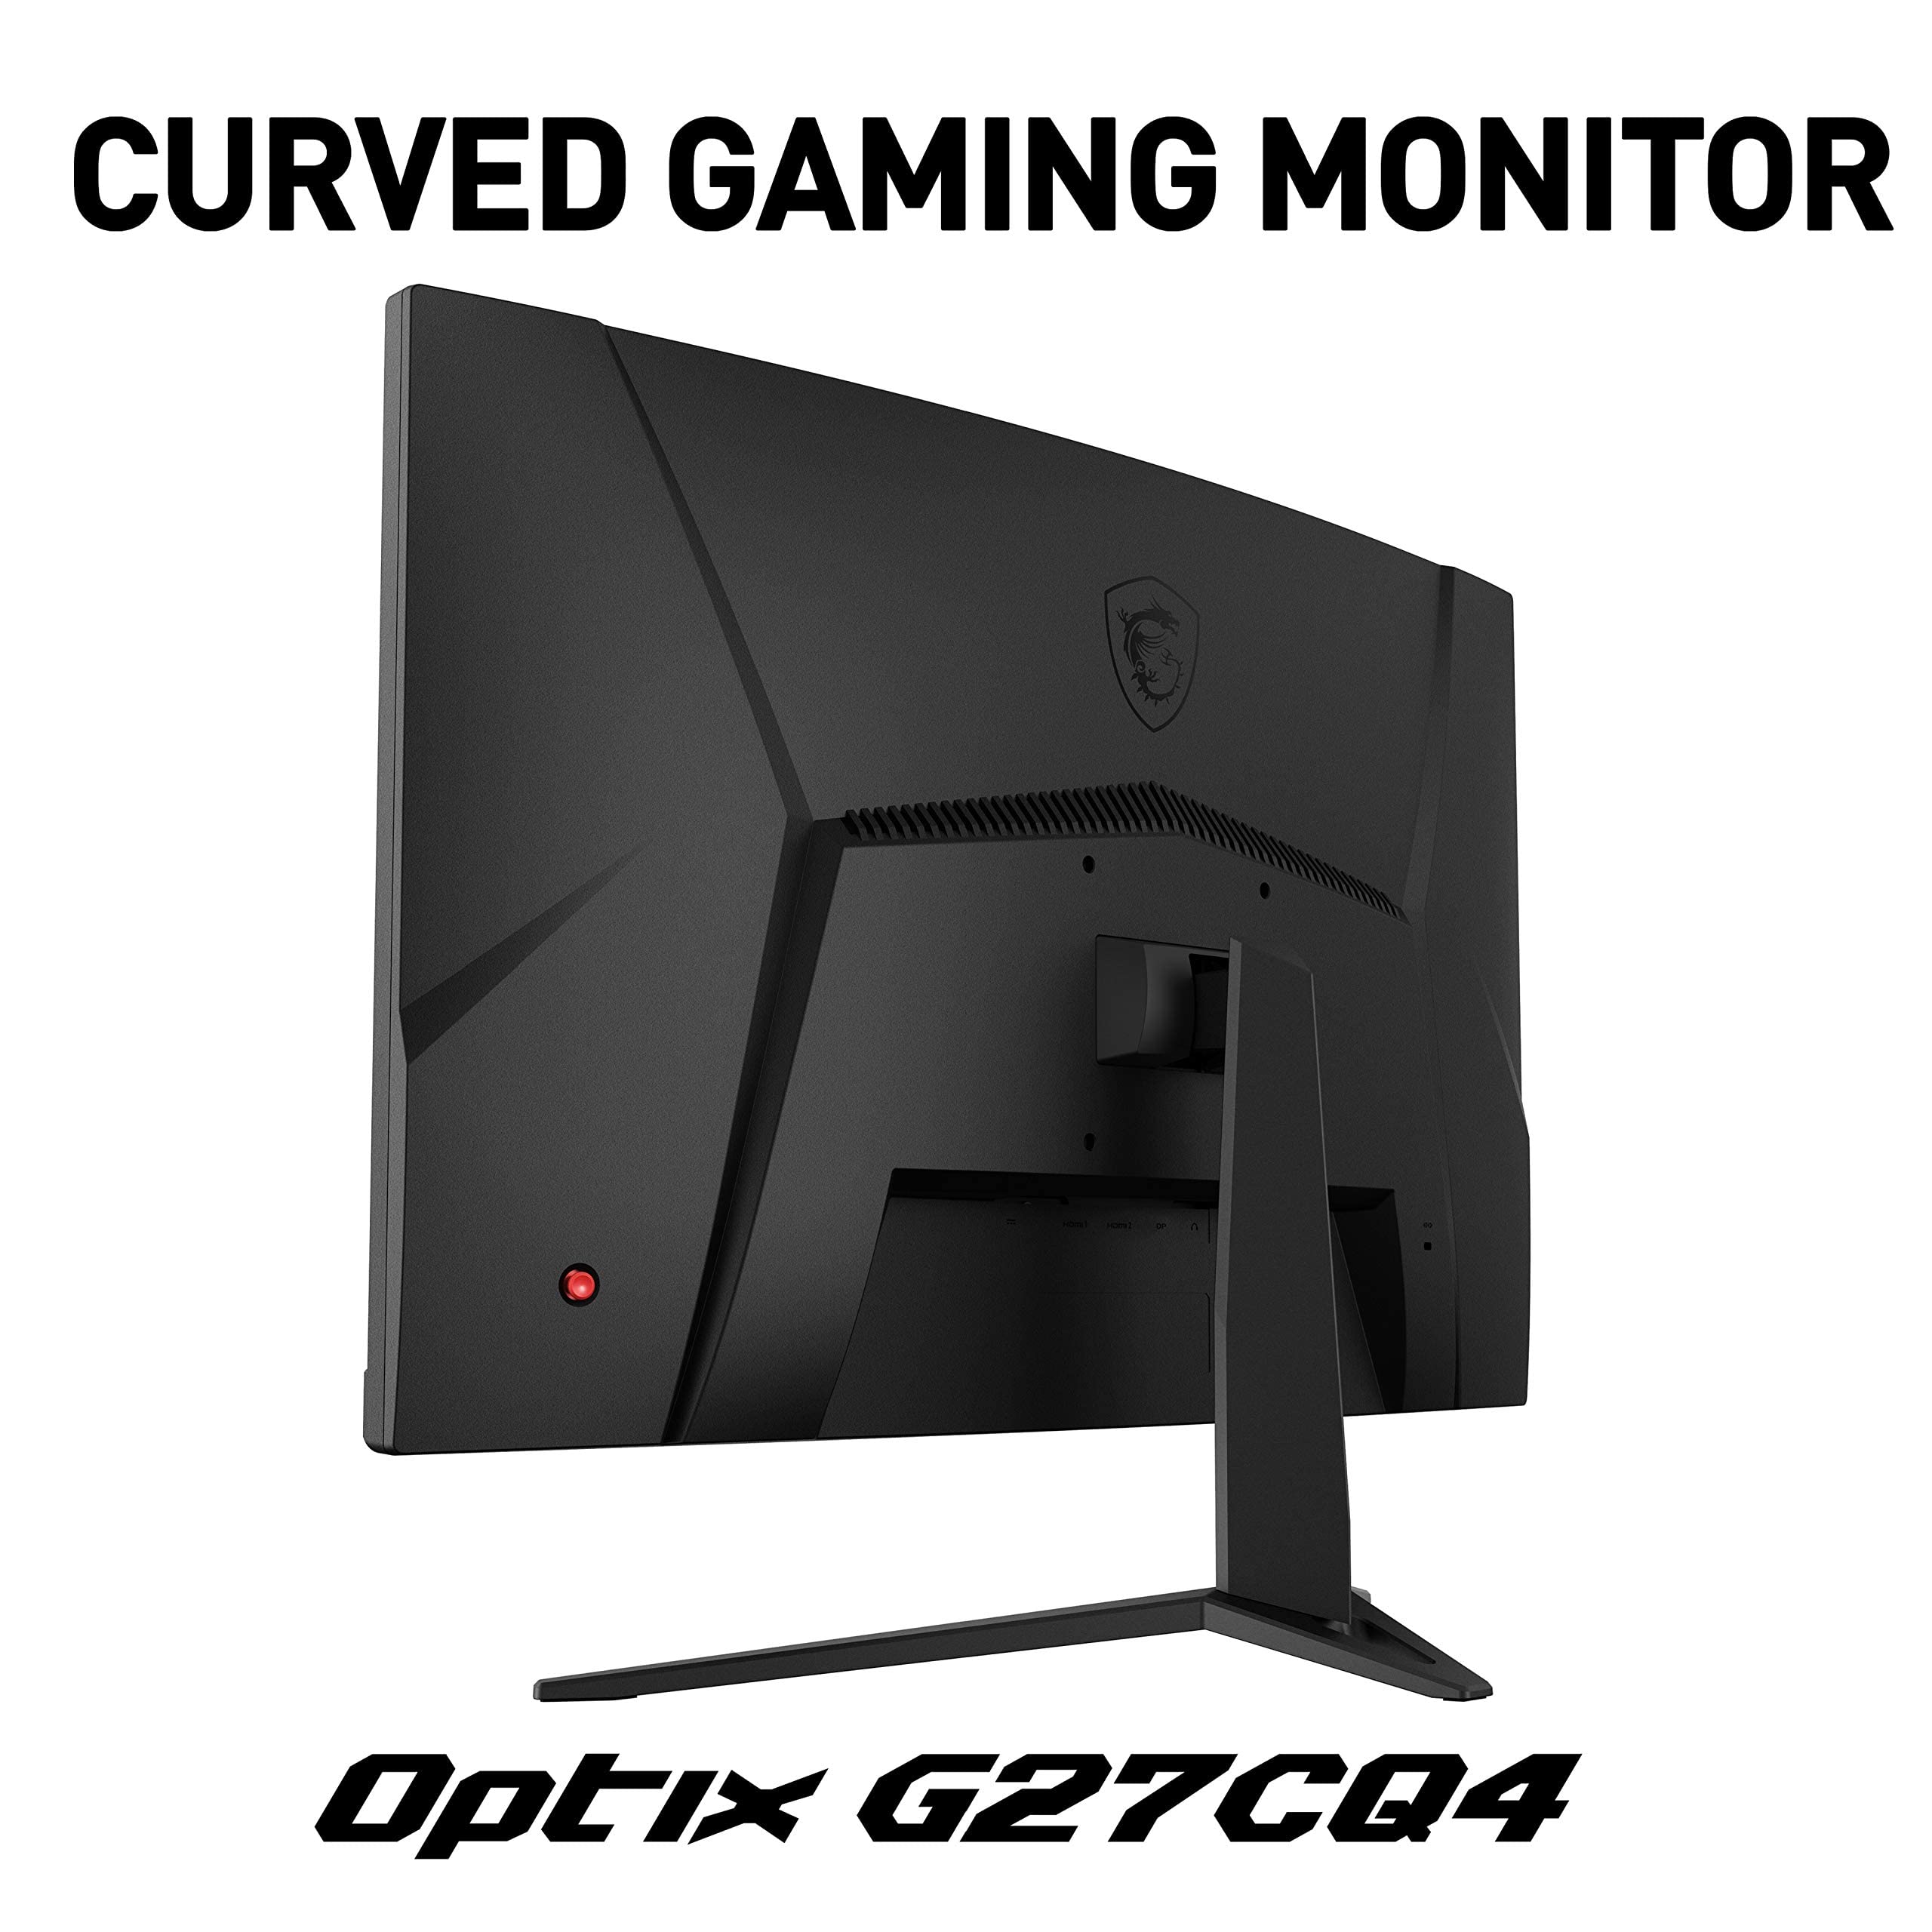 MSI Optix G27CQ4 Curved Gaming Monitor - 27 Inch, 16:9 WQHD (Renewed)